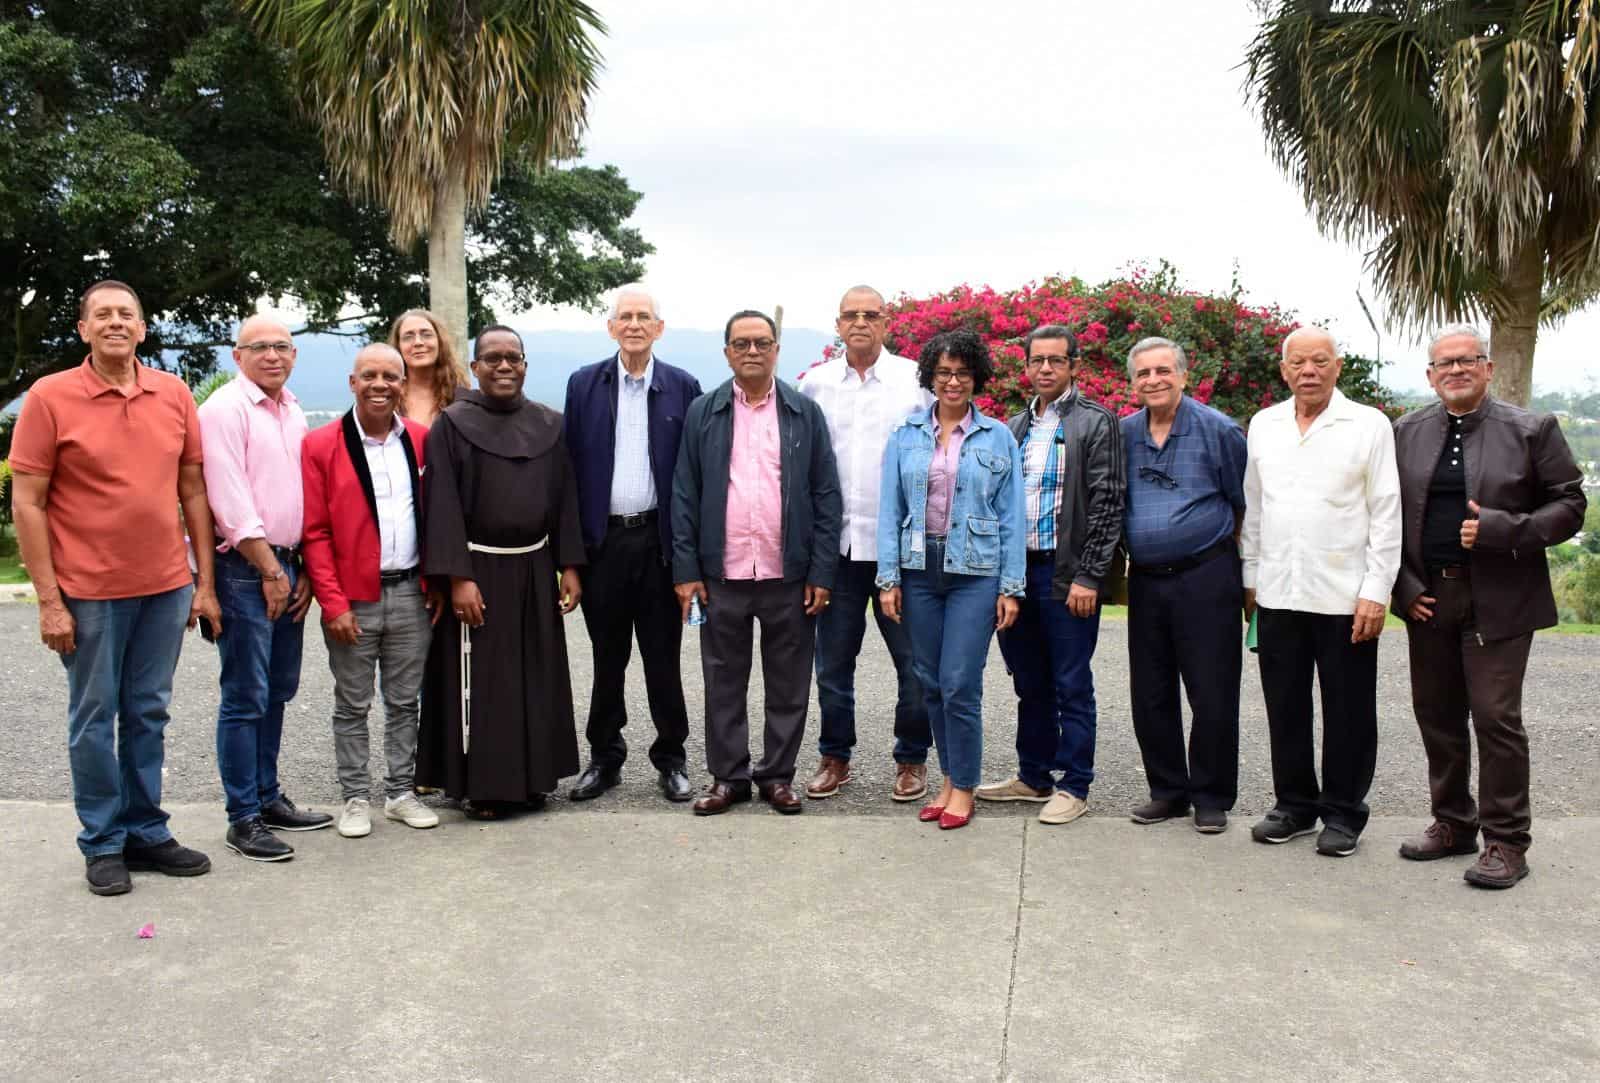 Nuevo encuentro del Ateneo Insular dedicado a fray Jit Manuel Castillo y Rafael Peralta Romero